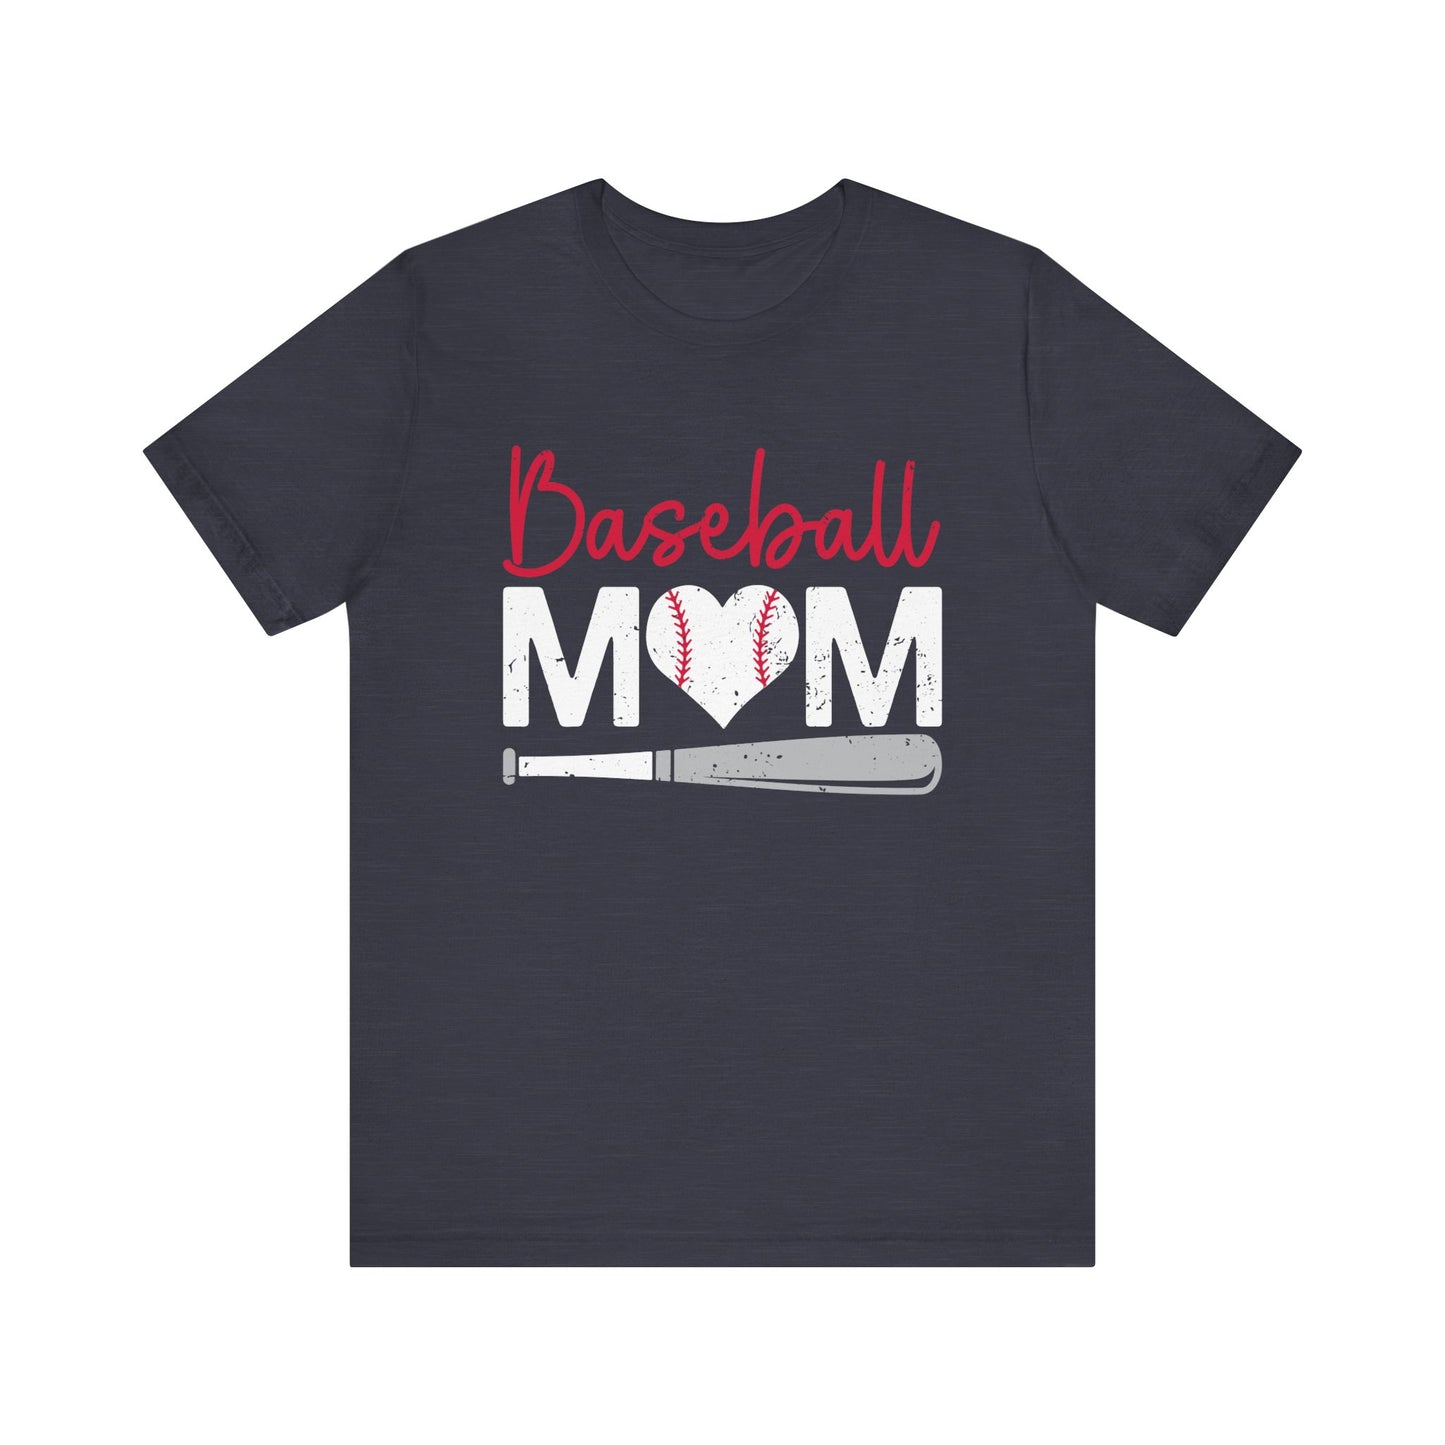 Baseball Mom Women's Baseball Short Sleeve Shirt